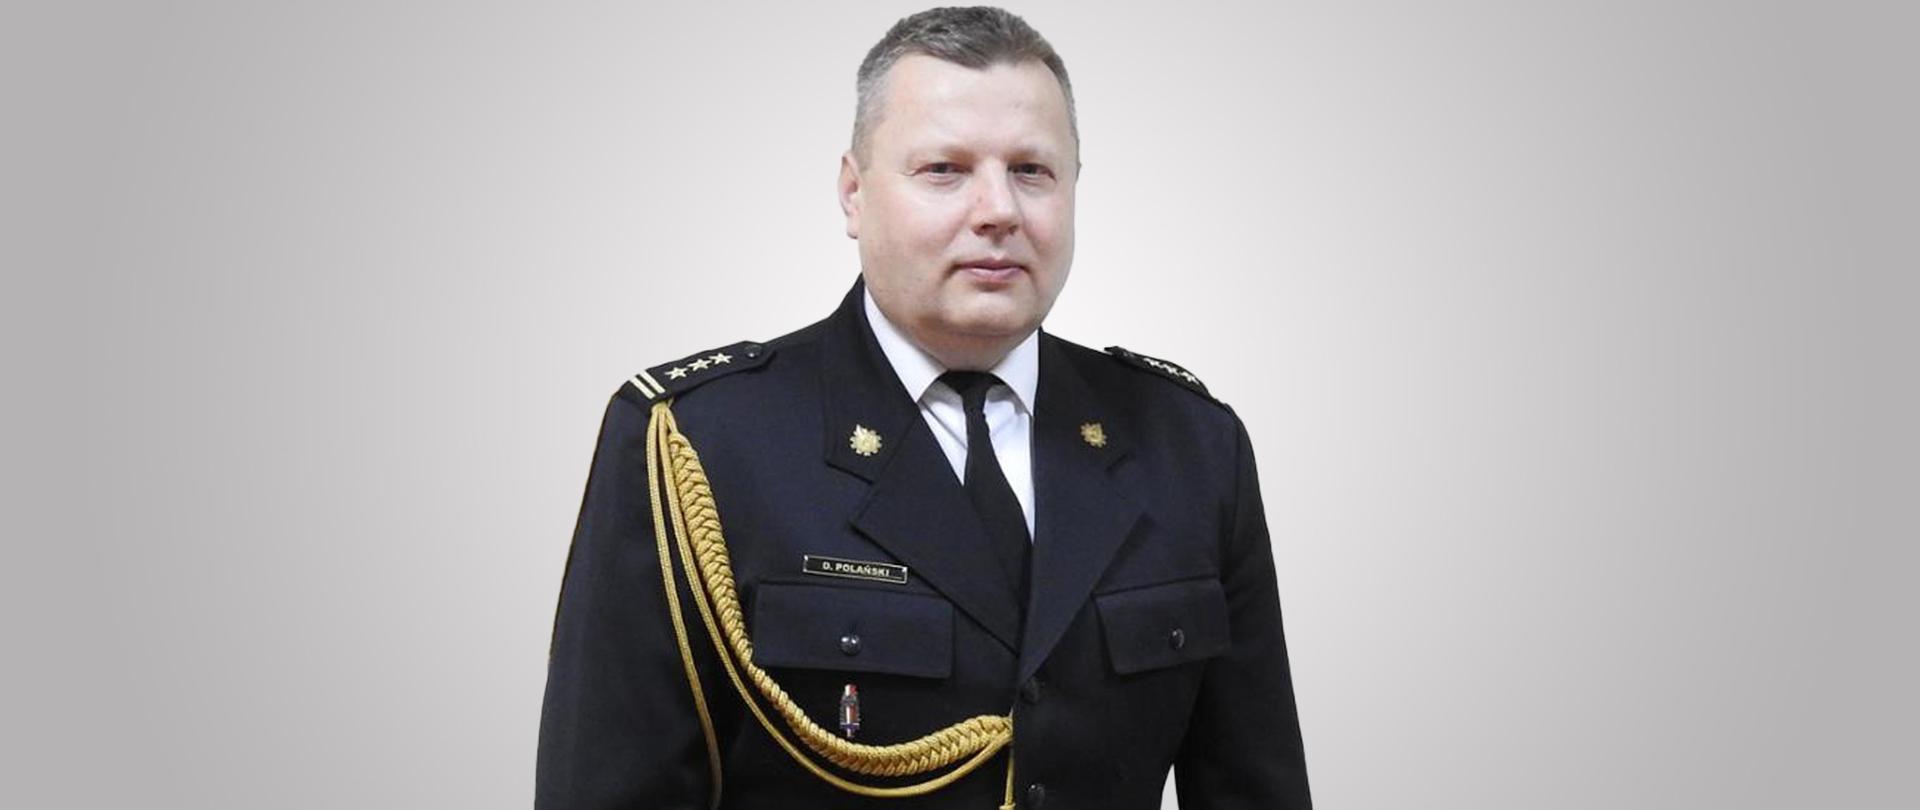 zdjęcie przedstawia starszego brygadiera Dariusza Polańskiego Zastępcę Łódzkiego Komendanta Wojewódzkiego PSP w Łodzi w mundurze wyjściowym. Zdjęcie portretowe.